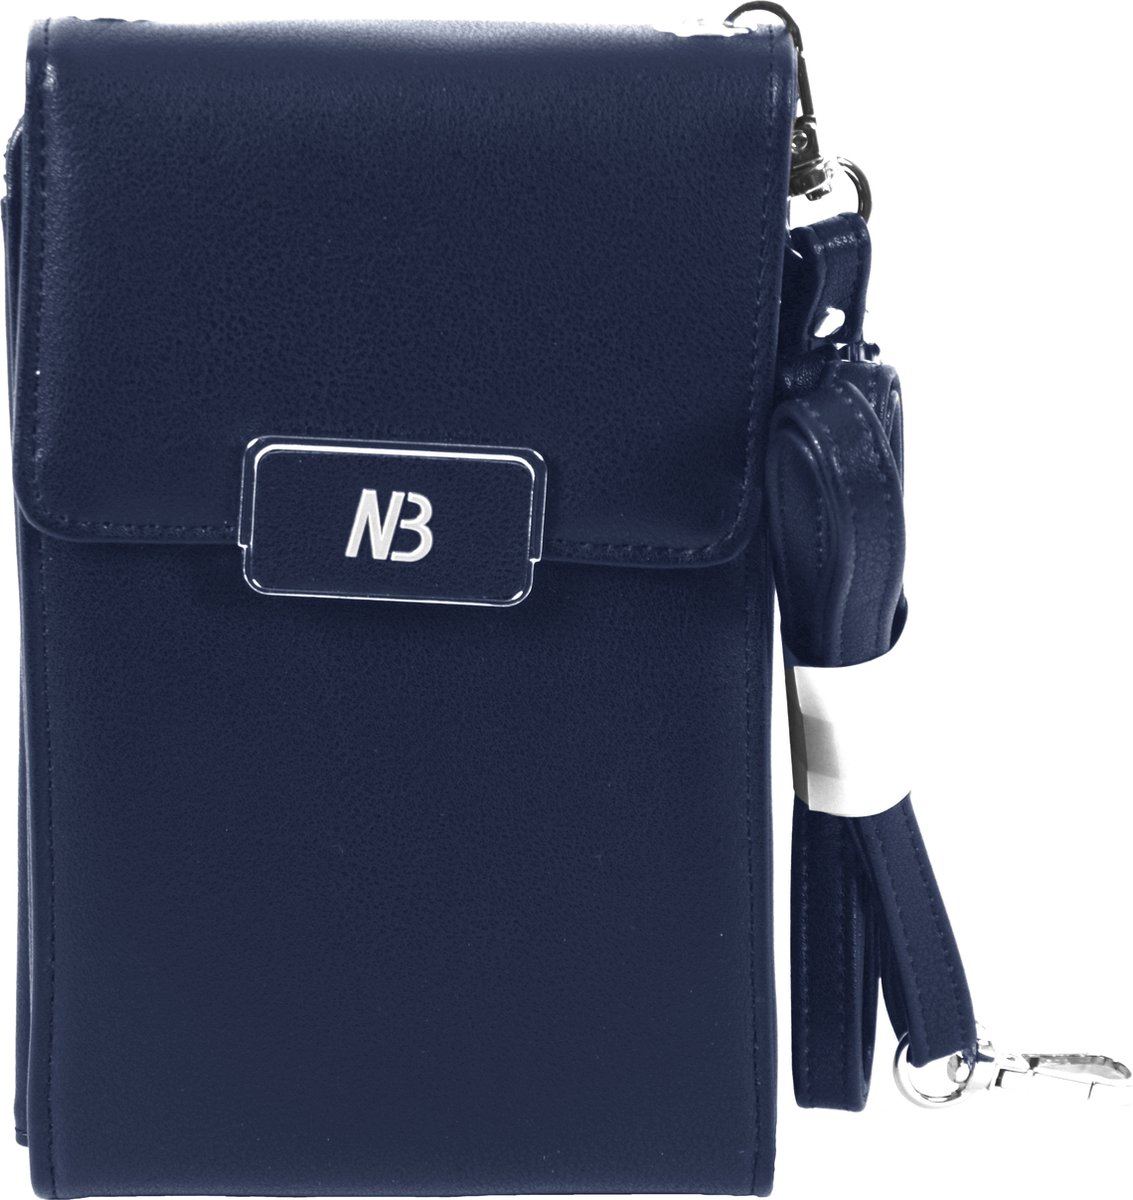 New Bags Telefoontasje/Festival bag| portemonnee tasje met schouderband | Crossbody telefoontasje - Donkerblauw